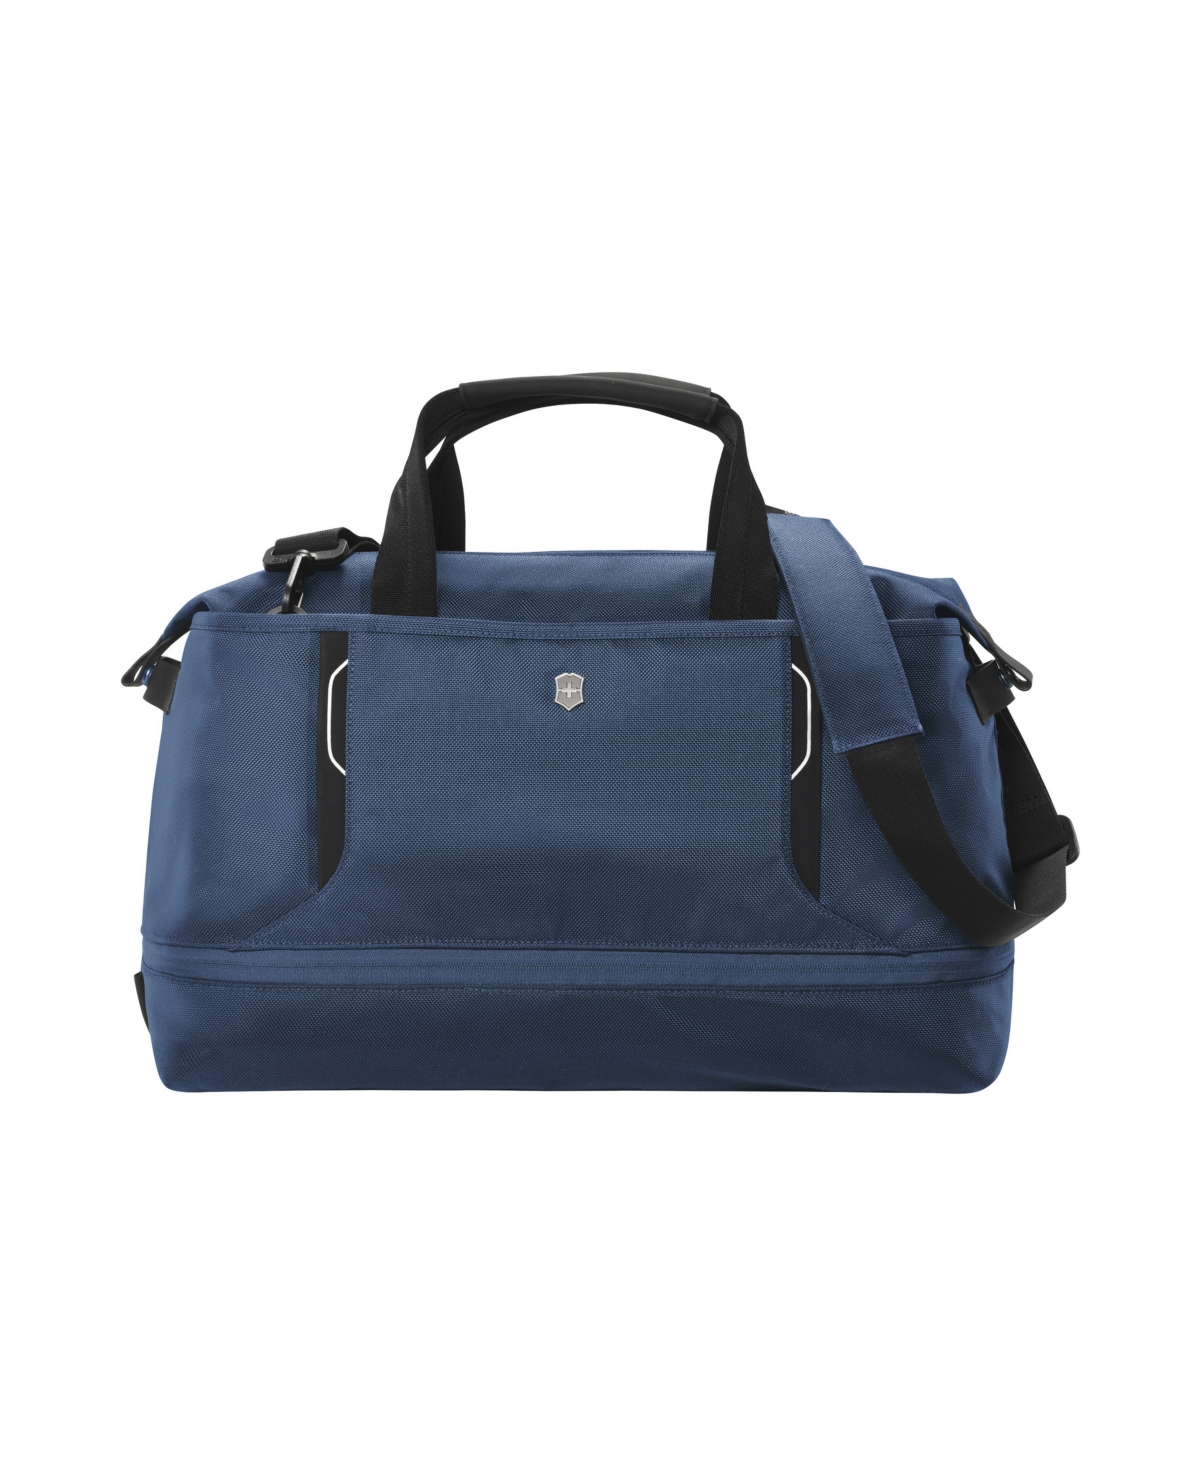 Victorinox Swiss Army Werks 6.0 Weekender Duffel Bag In Blue